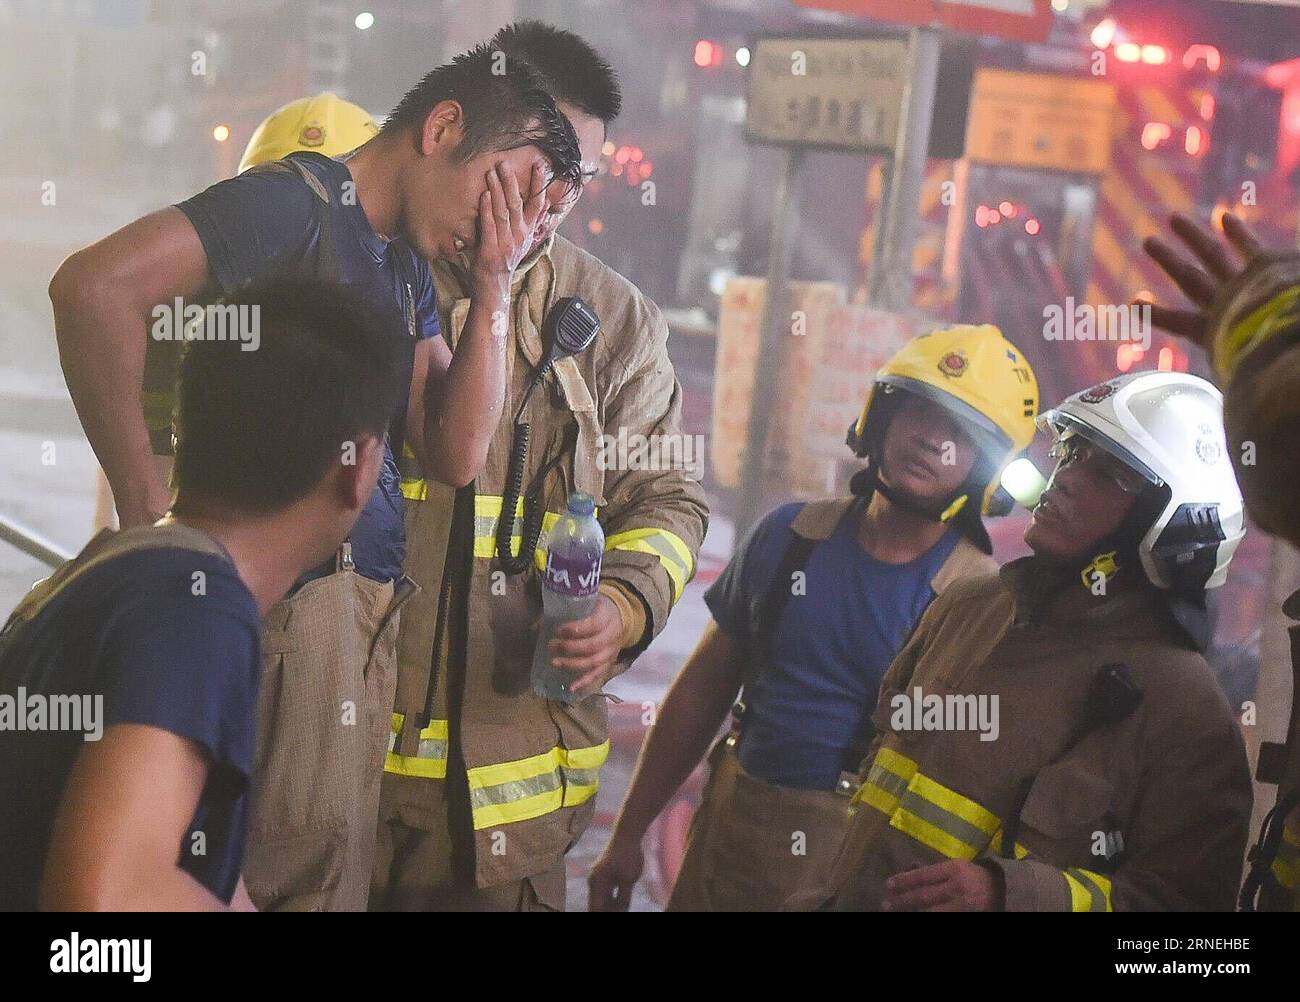 Hong Kong : marque à Industriegebäude HONG KONG, le 23 juin 2016 -- les pompiers font une pause près d'un bâtiment industriel de plusieurs étages en feu dans le quartier de East Kowloon à Hong Kong, dans le sud de la Chine, le 23 juin 2016. Un deuxième pompier est mort jeudi soir après avoir combattu un incendie à quatre alarmes qui a fait rage pendant plus de deux jours dans un bâtiment industriel de Kowloon Bay. (Cxy) HONG KONG-FIRE-CASUALTY (CN) NgxWingxKin PUBLICATIONxNOTxINxCHN marque de Hong Kong dans les bâtiments industriels Hong Kong juin 23 2016 les pompiers font une pause près d'un bâtiment industriel de plusieurs étages en feu dans le quartier East Kowloon de Hong Kong sout Banque D'Images